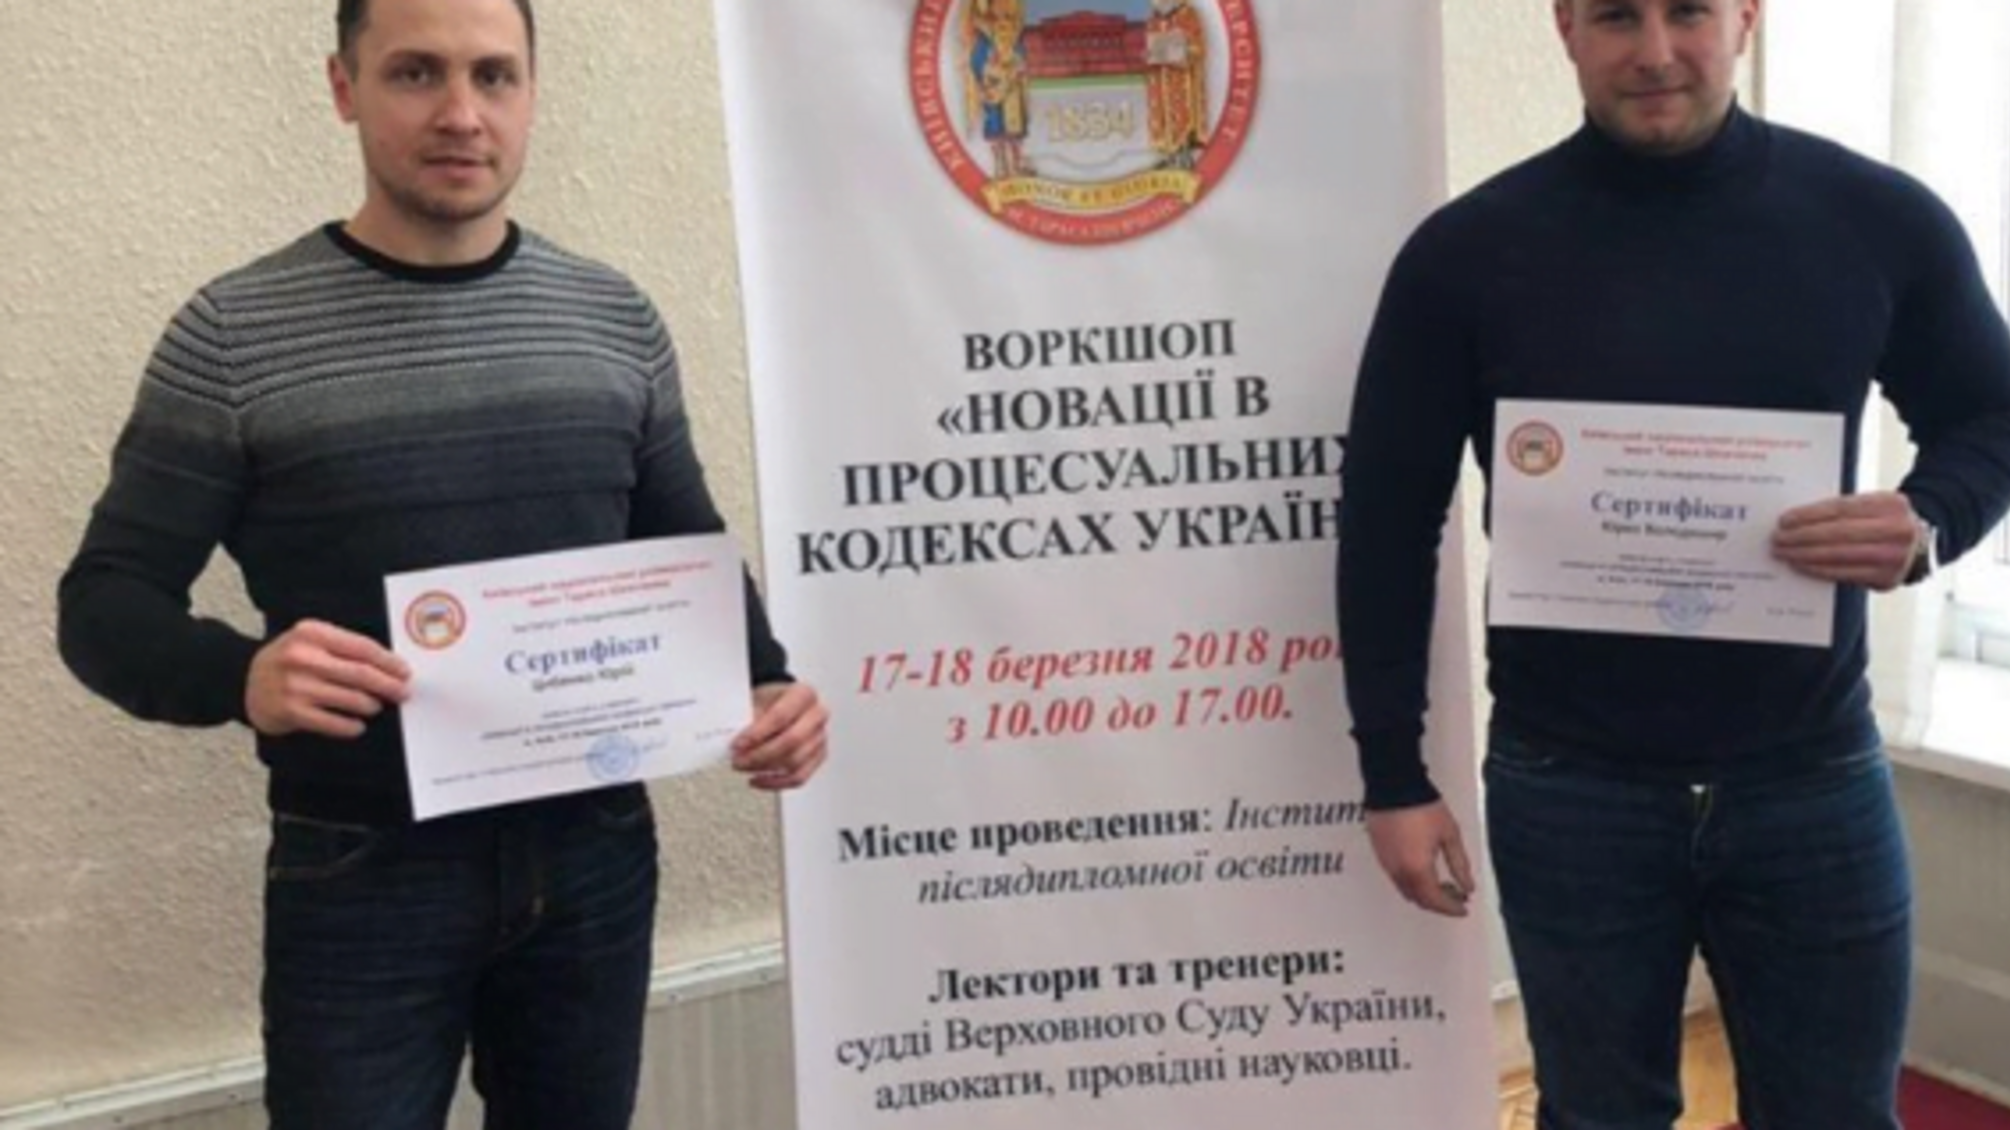 Юристи 'Стоп корупції' на воркшопі дізнались про новації в процесуальних кодексах України